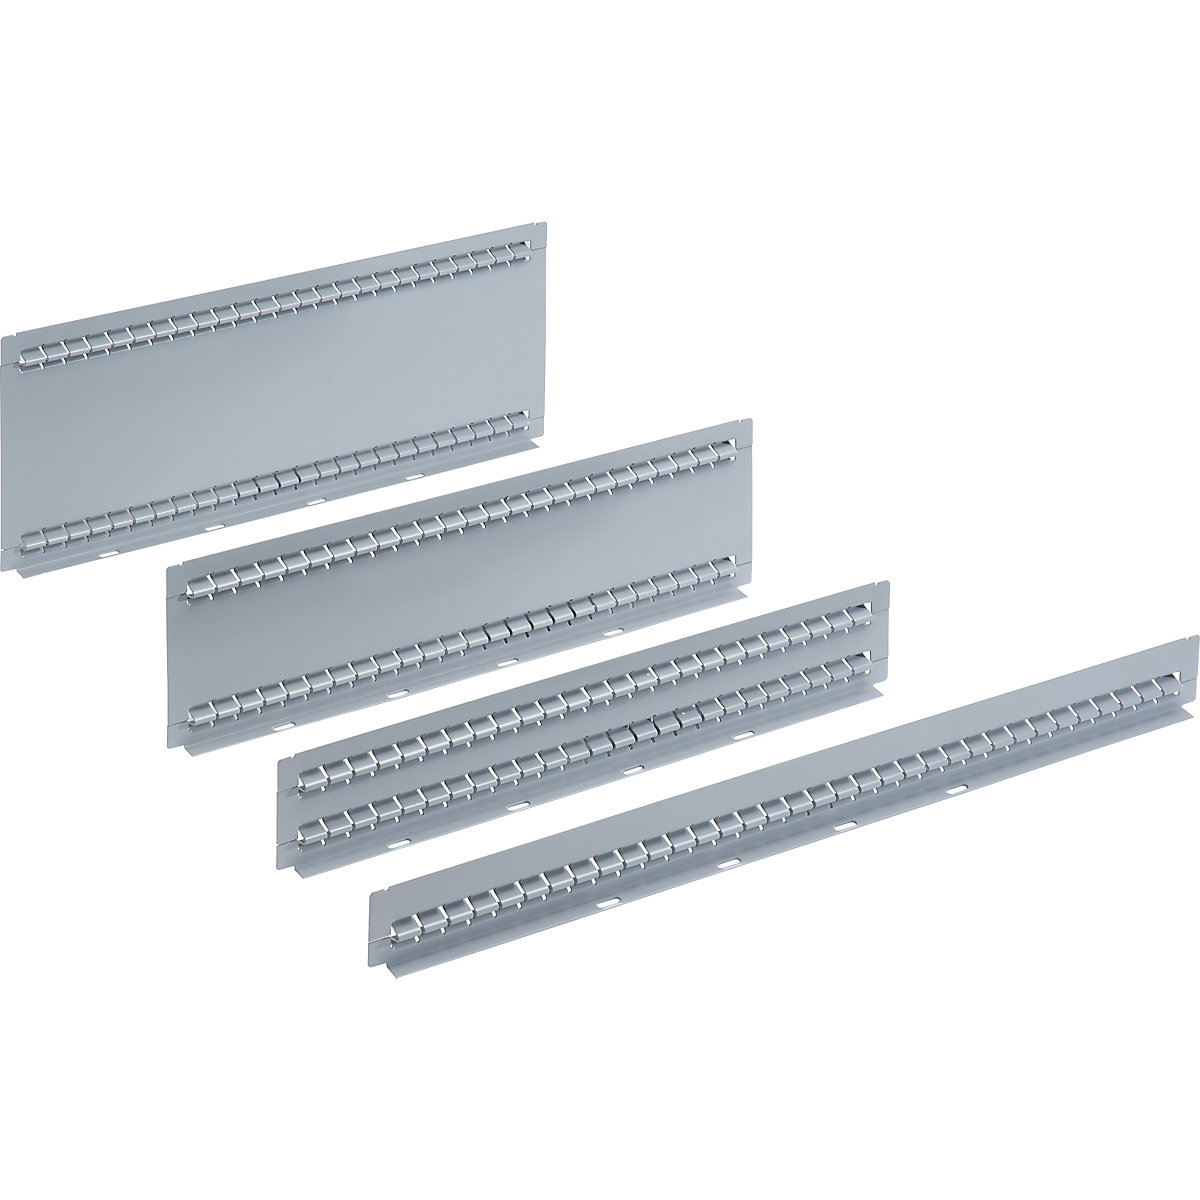 LISTA – Material de divisão de gavetas, embalagem = 5 unid., para gavetas com 75 mm de altura, parede ranhurada, profundidade 459 mm